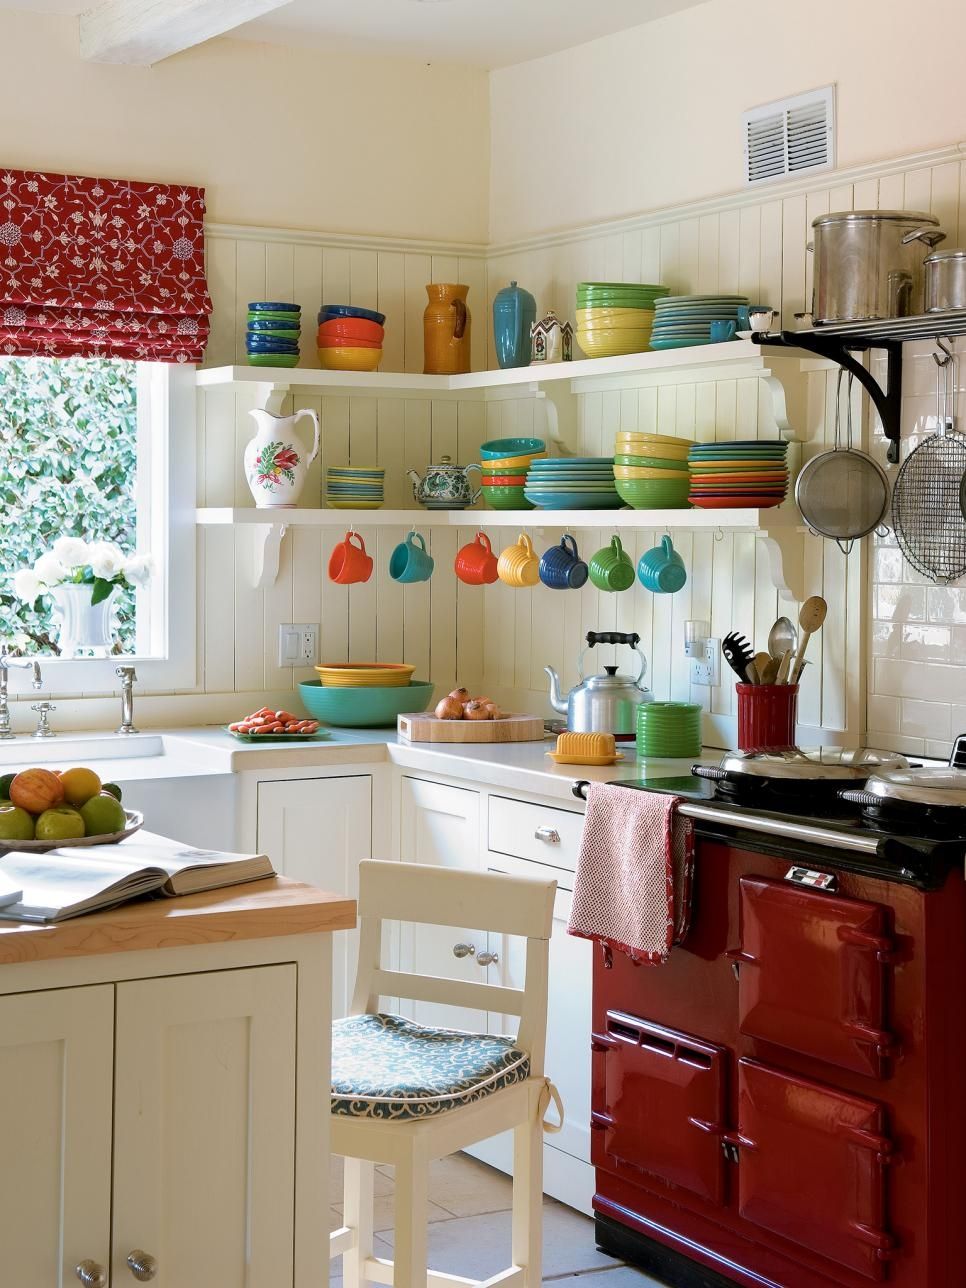 Бял кухненски интериор с хармонична комбинация от цветове